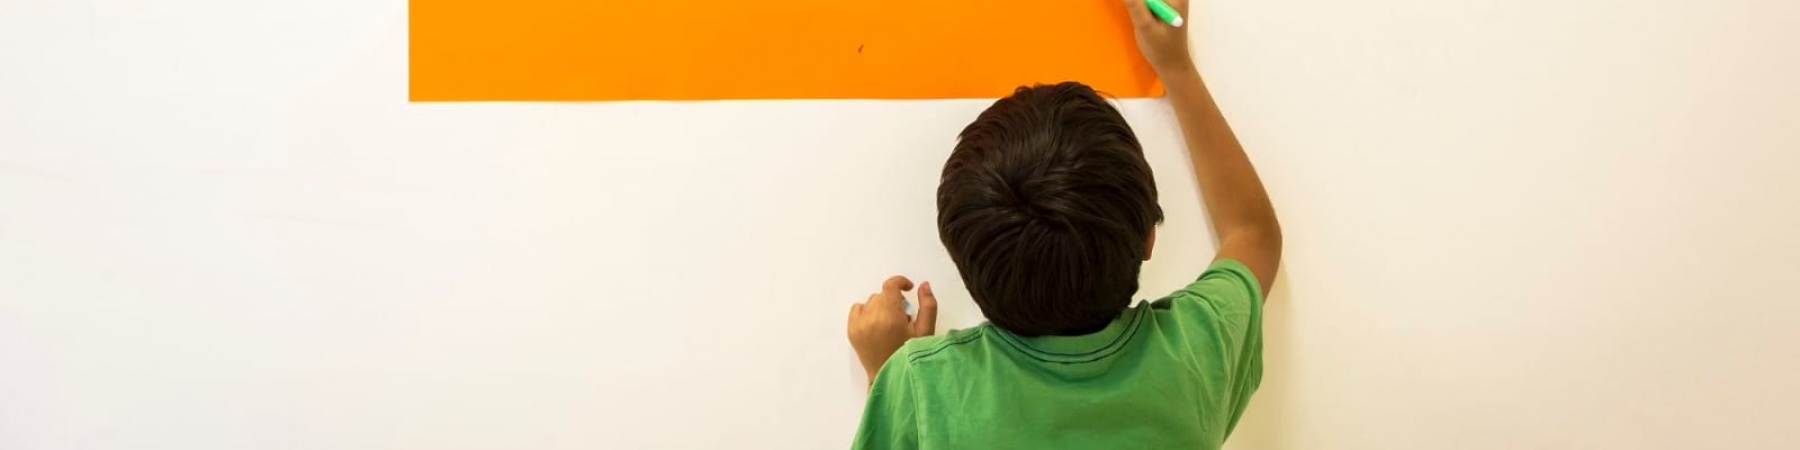 Bambino di spalle con maglietta vede scrive su un cartello appeso al muro le parole arcipelago educativo